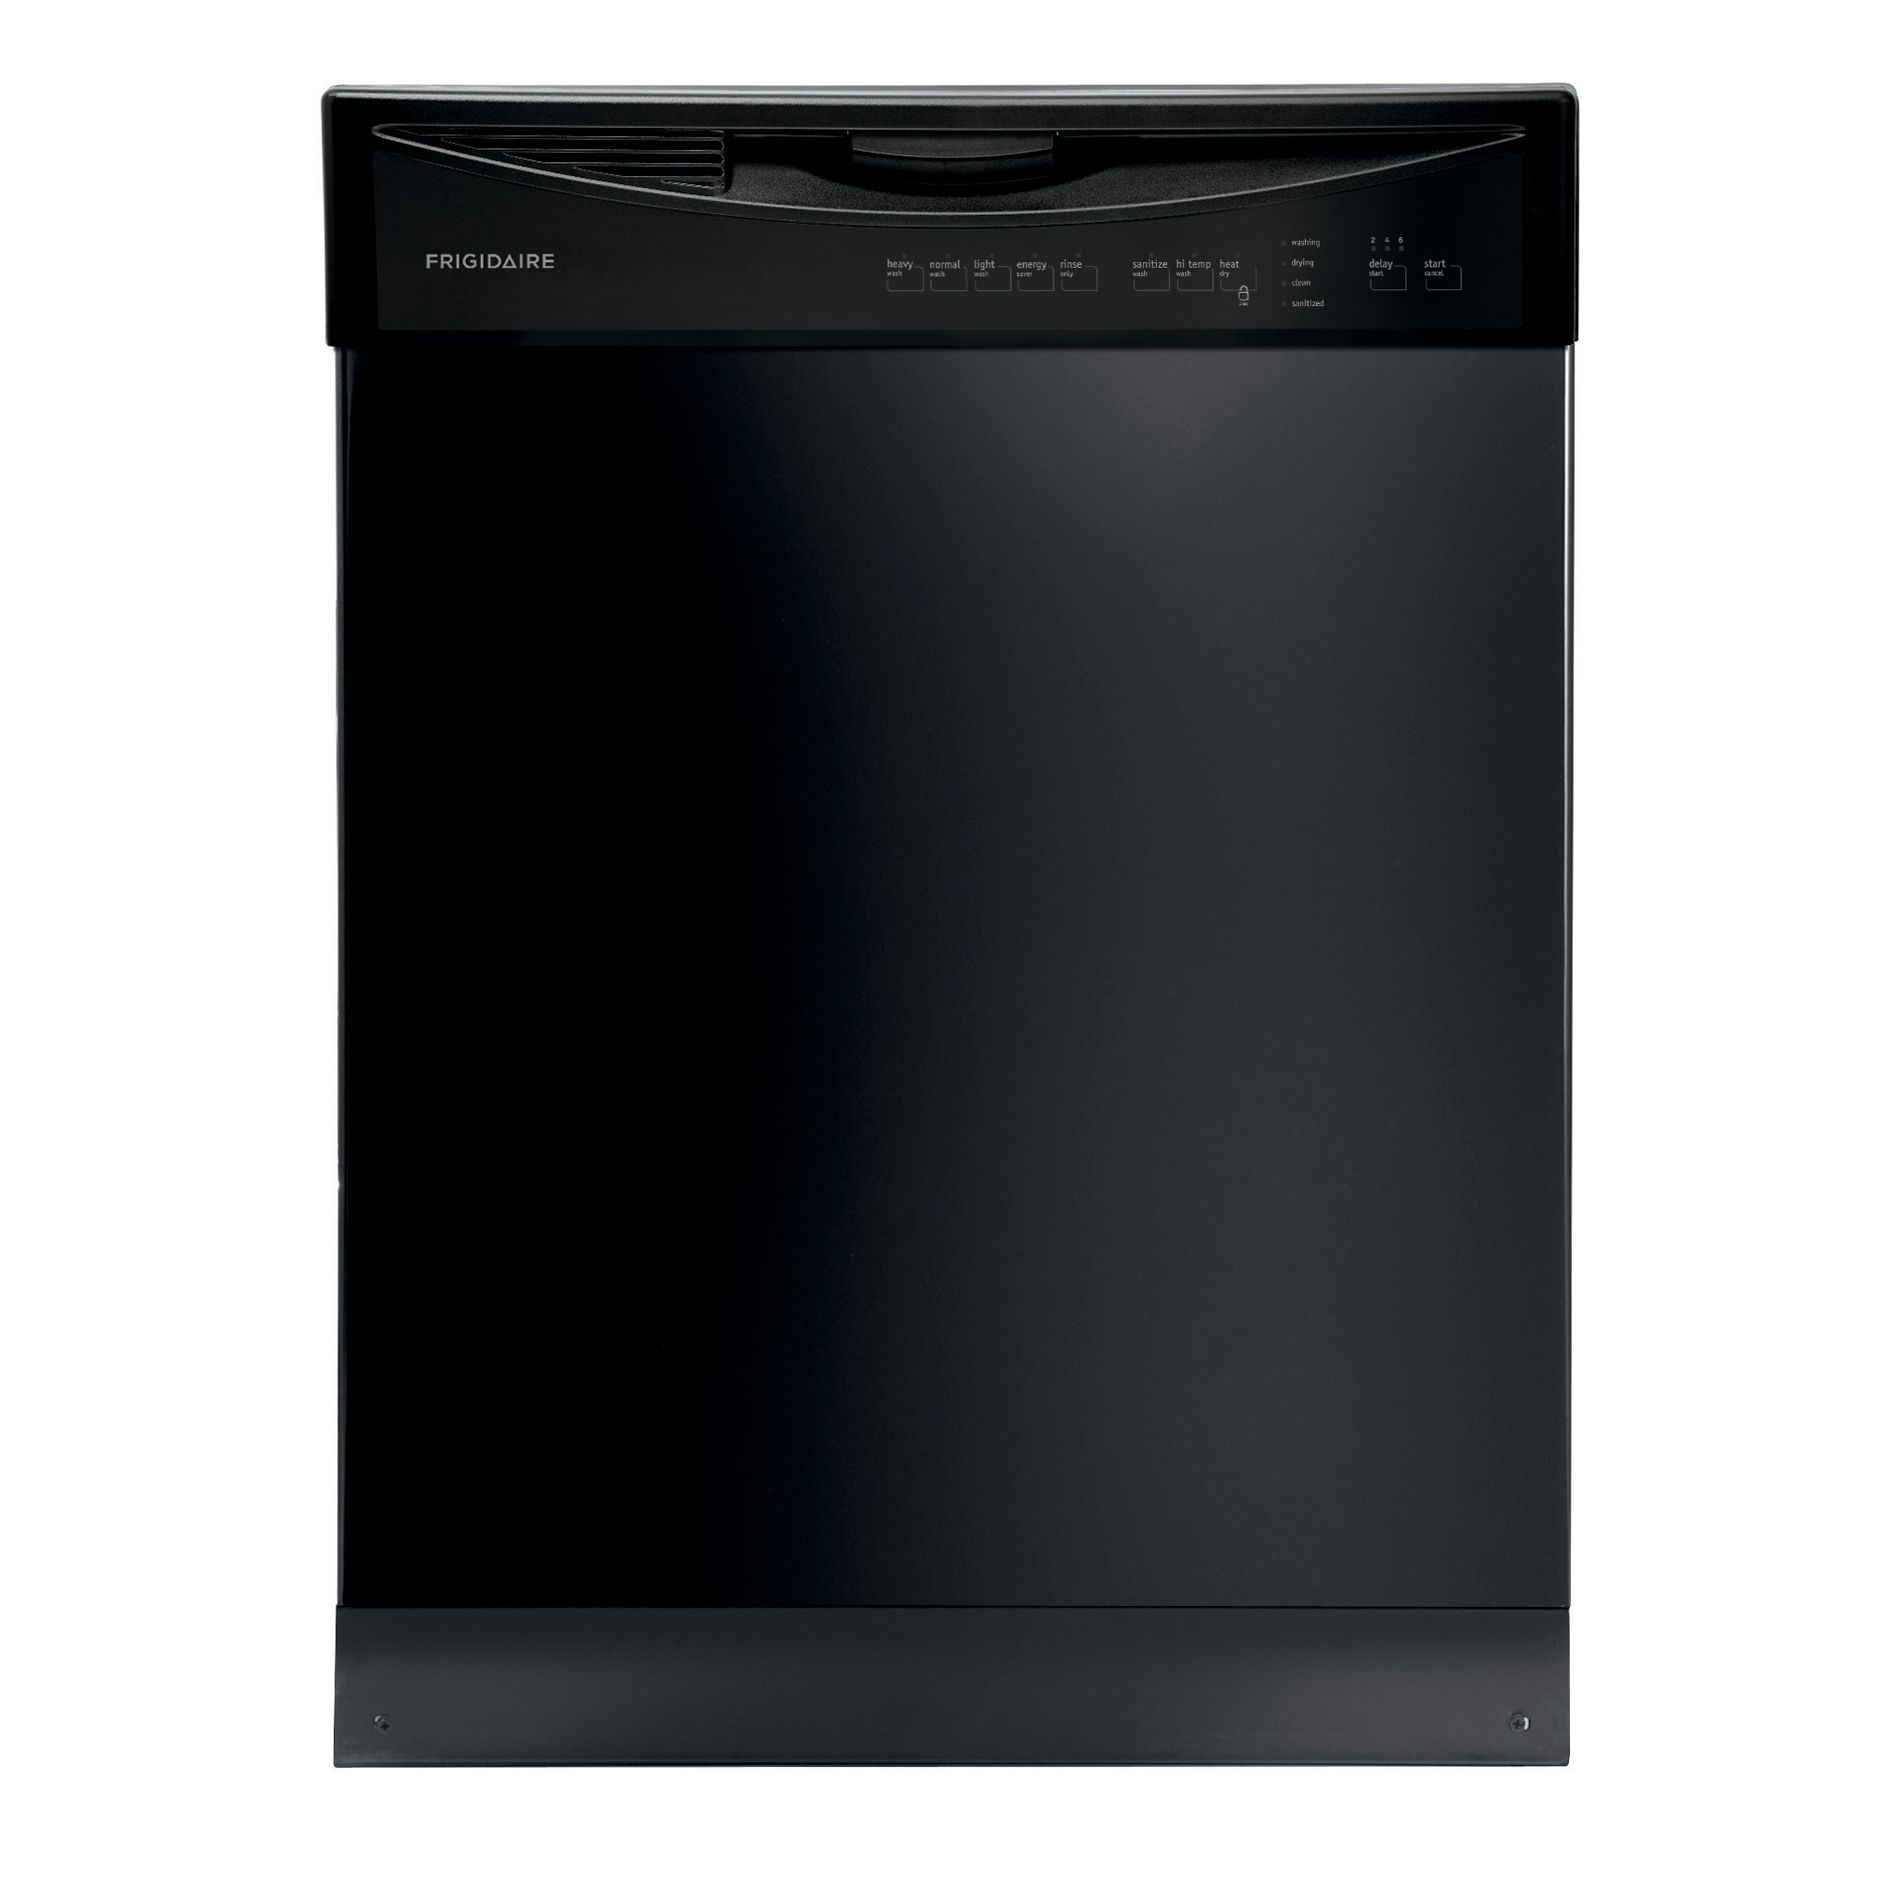 Frigidaire FFBD2411NB 24 Built-In Dishwasher - Black